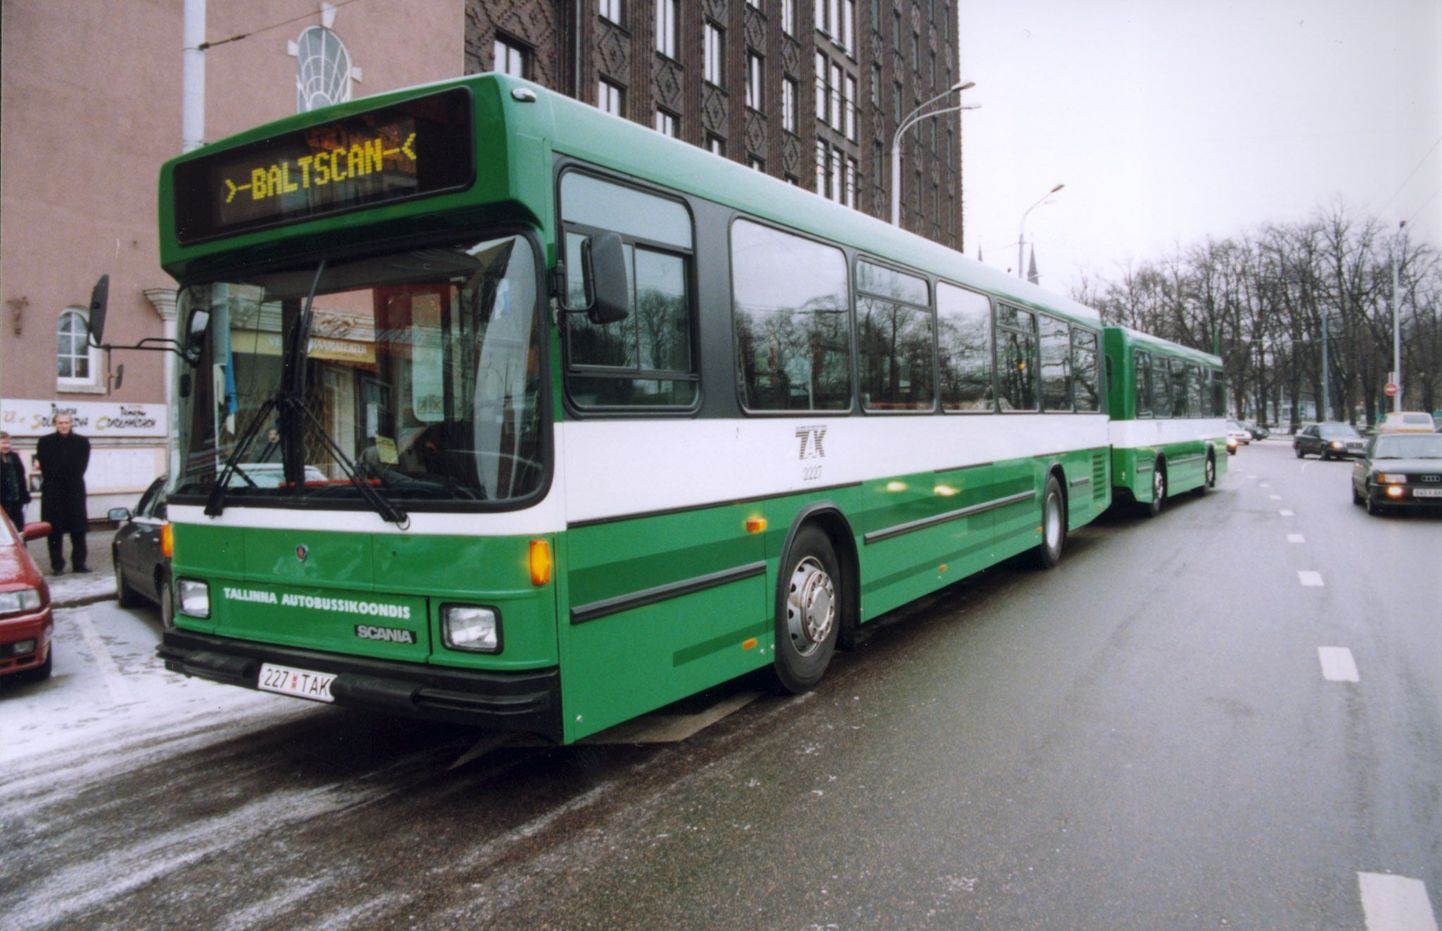 Uus bussirong 1999. aastal linnavalitsuse hoone ees.